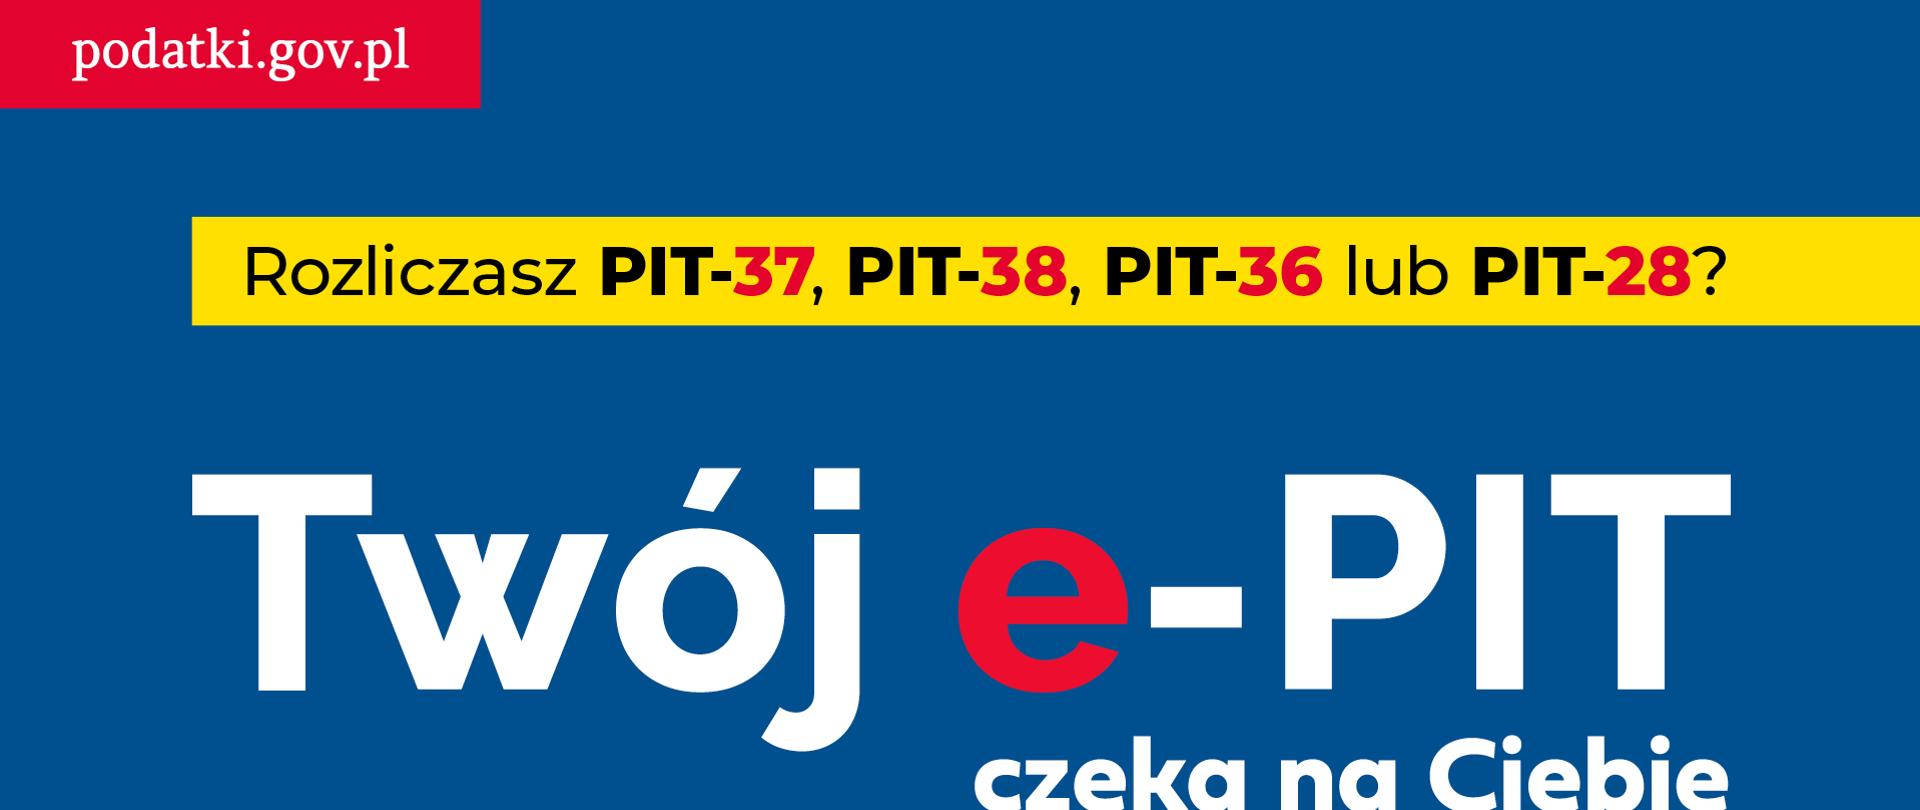 Na niebieskim tle napisy twój e-pit czekam na ciebie podatki.gov.pl